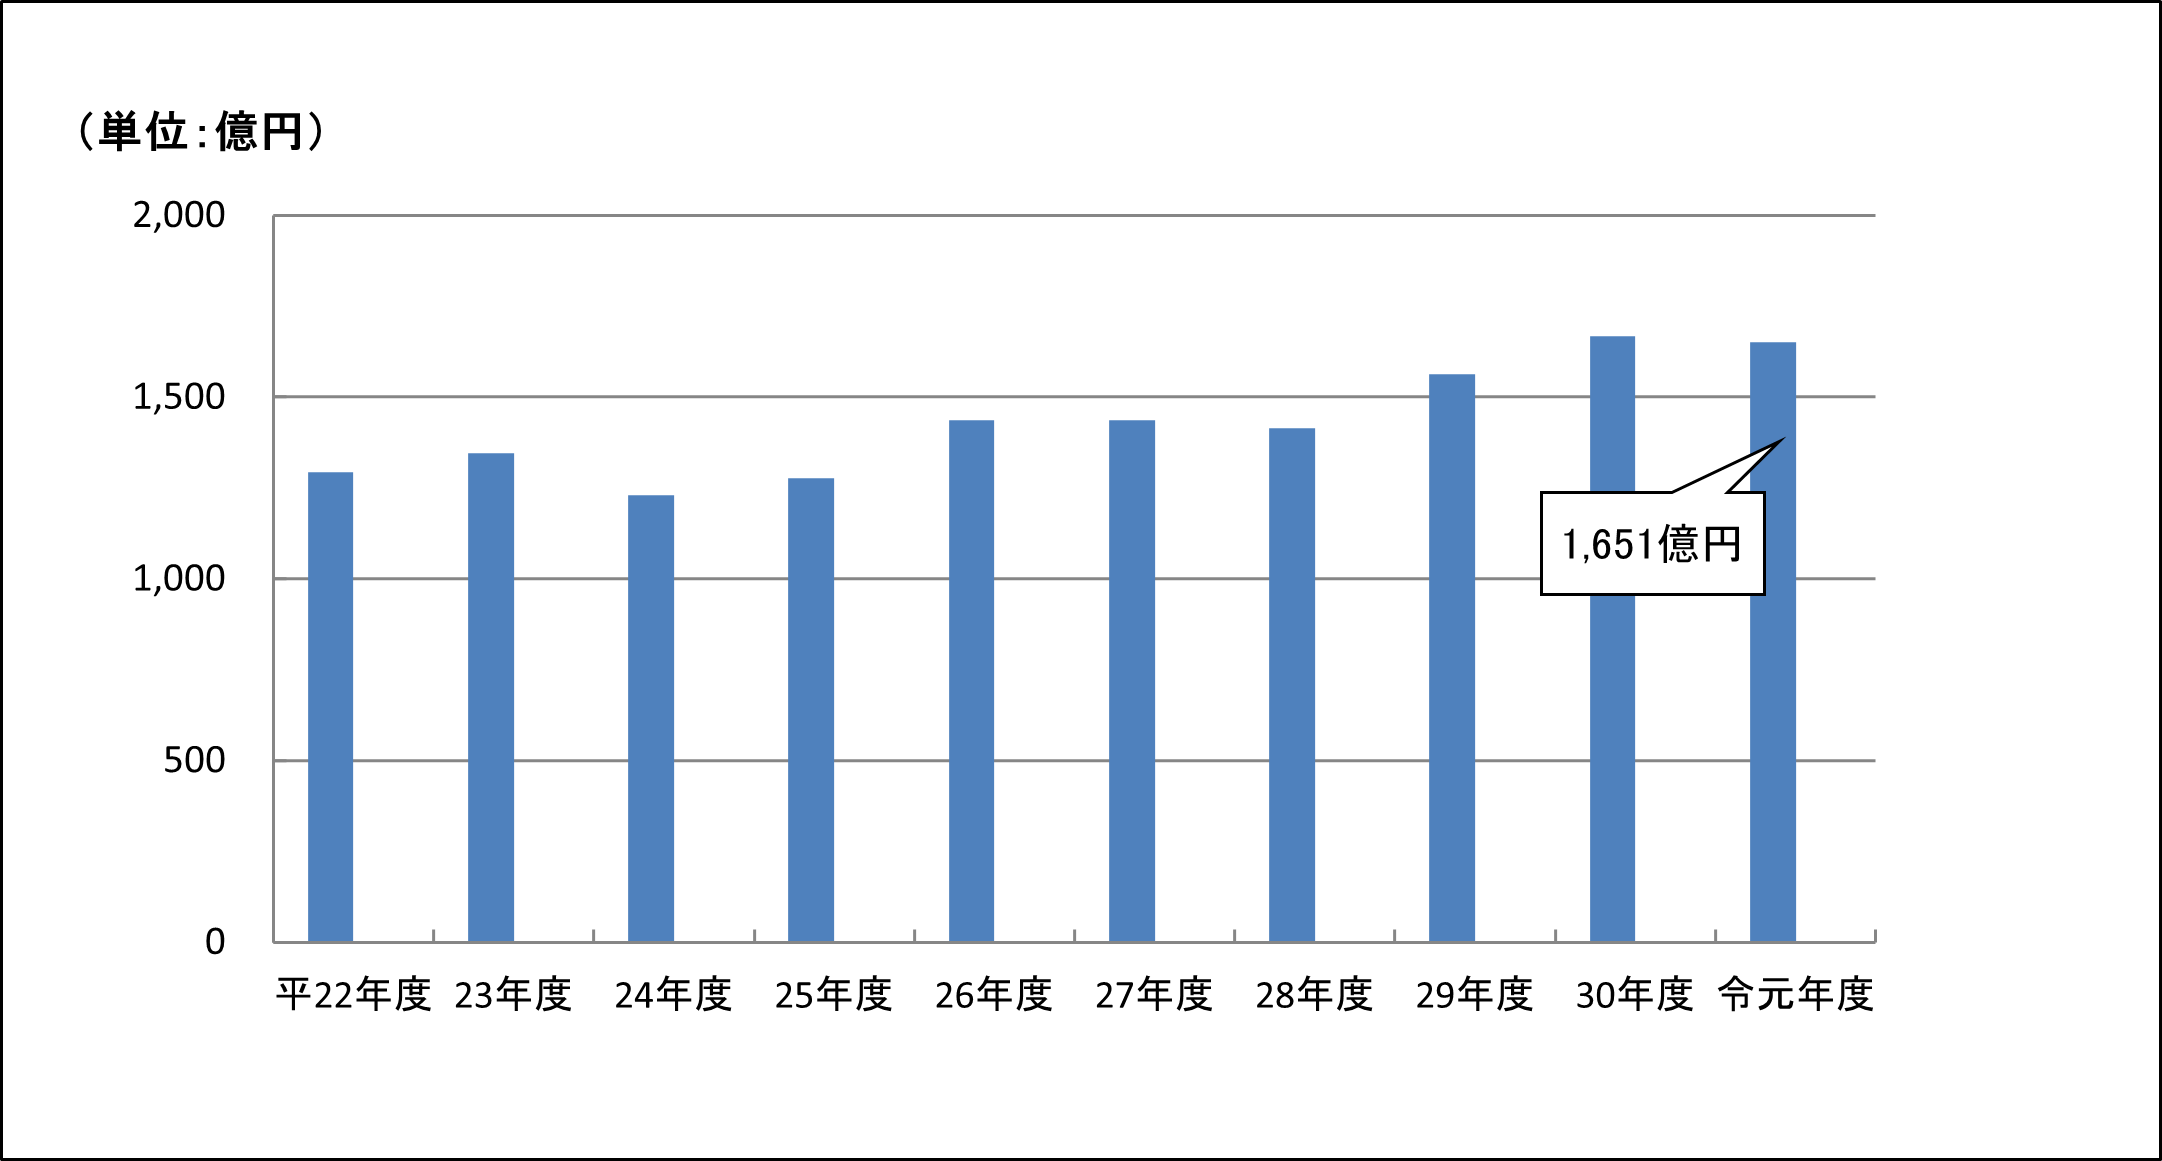 平成22事務年度から令和元事務年度の黒字申告割合の推移のグラフ